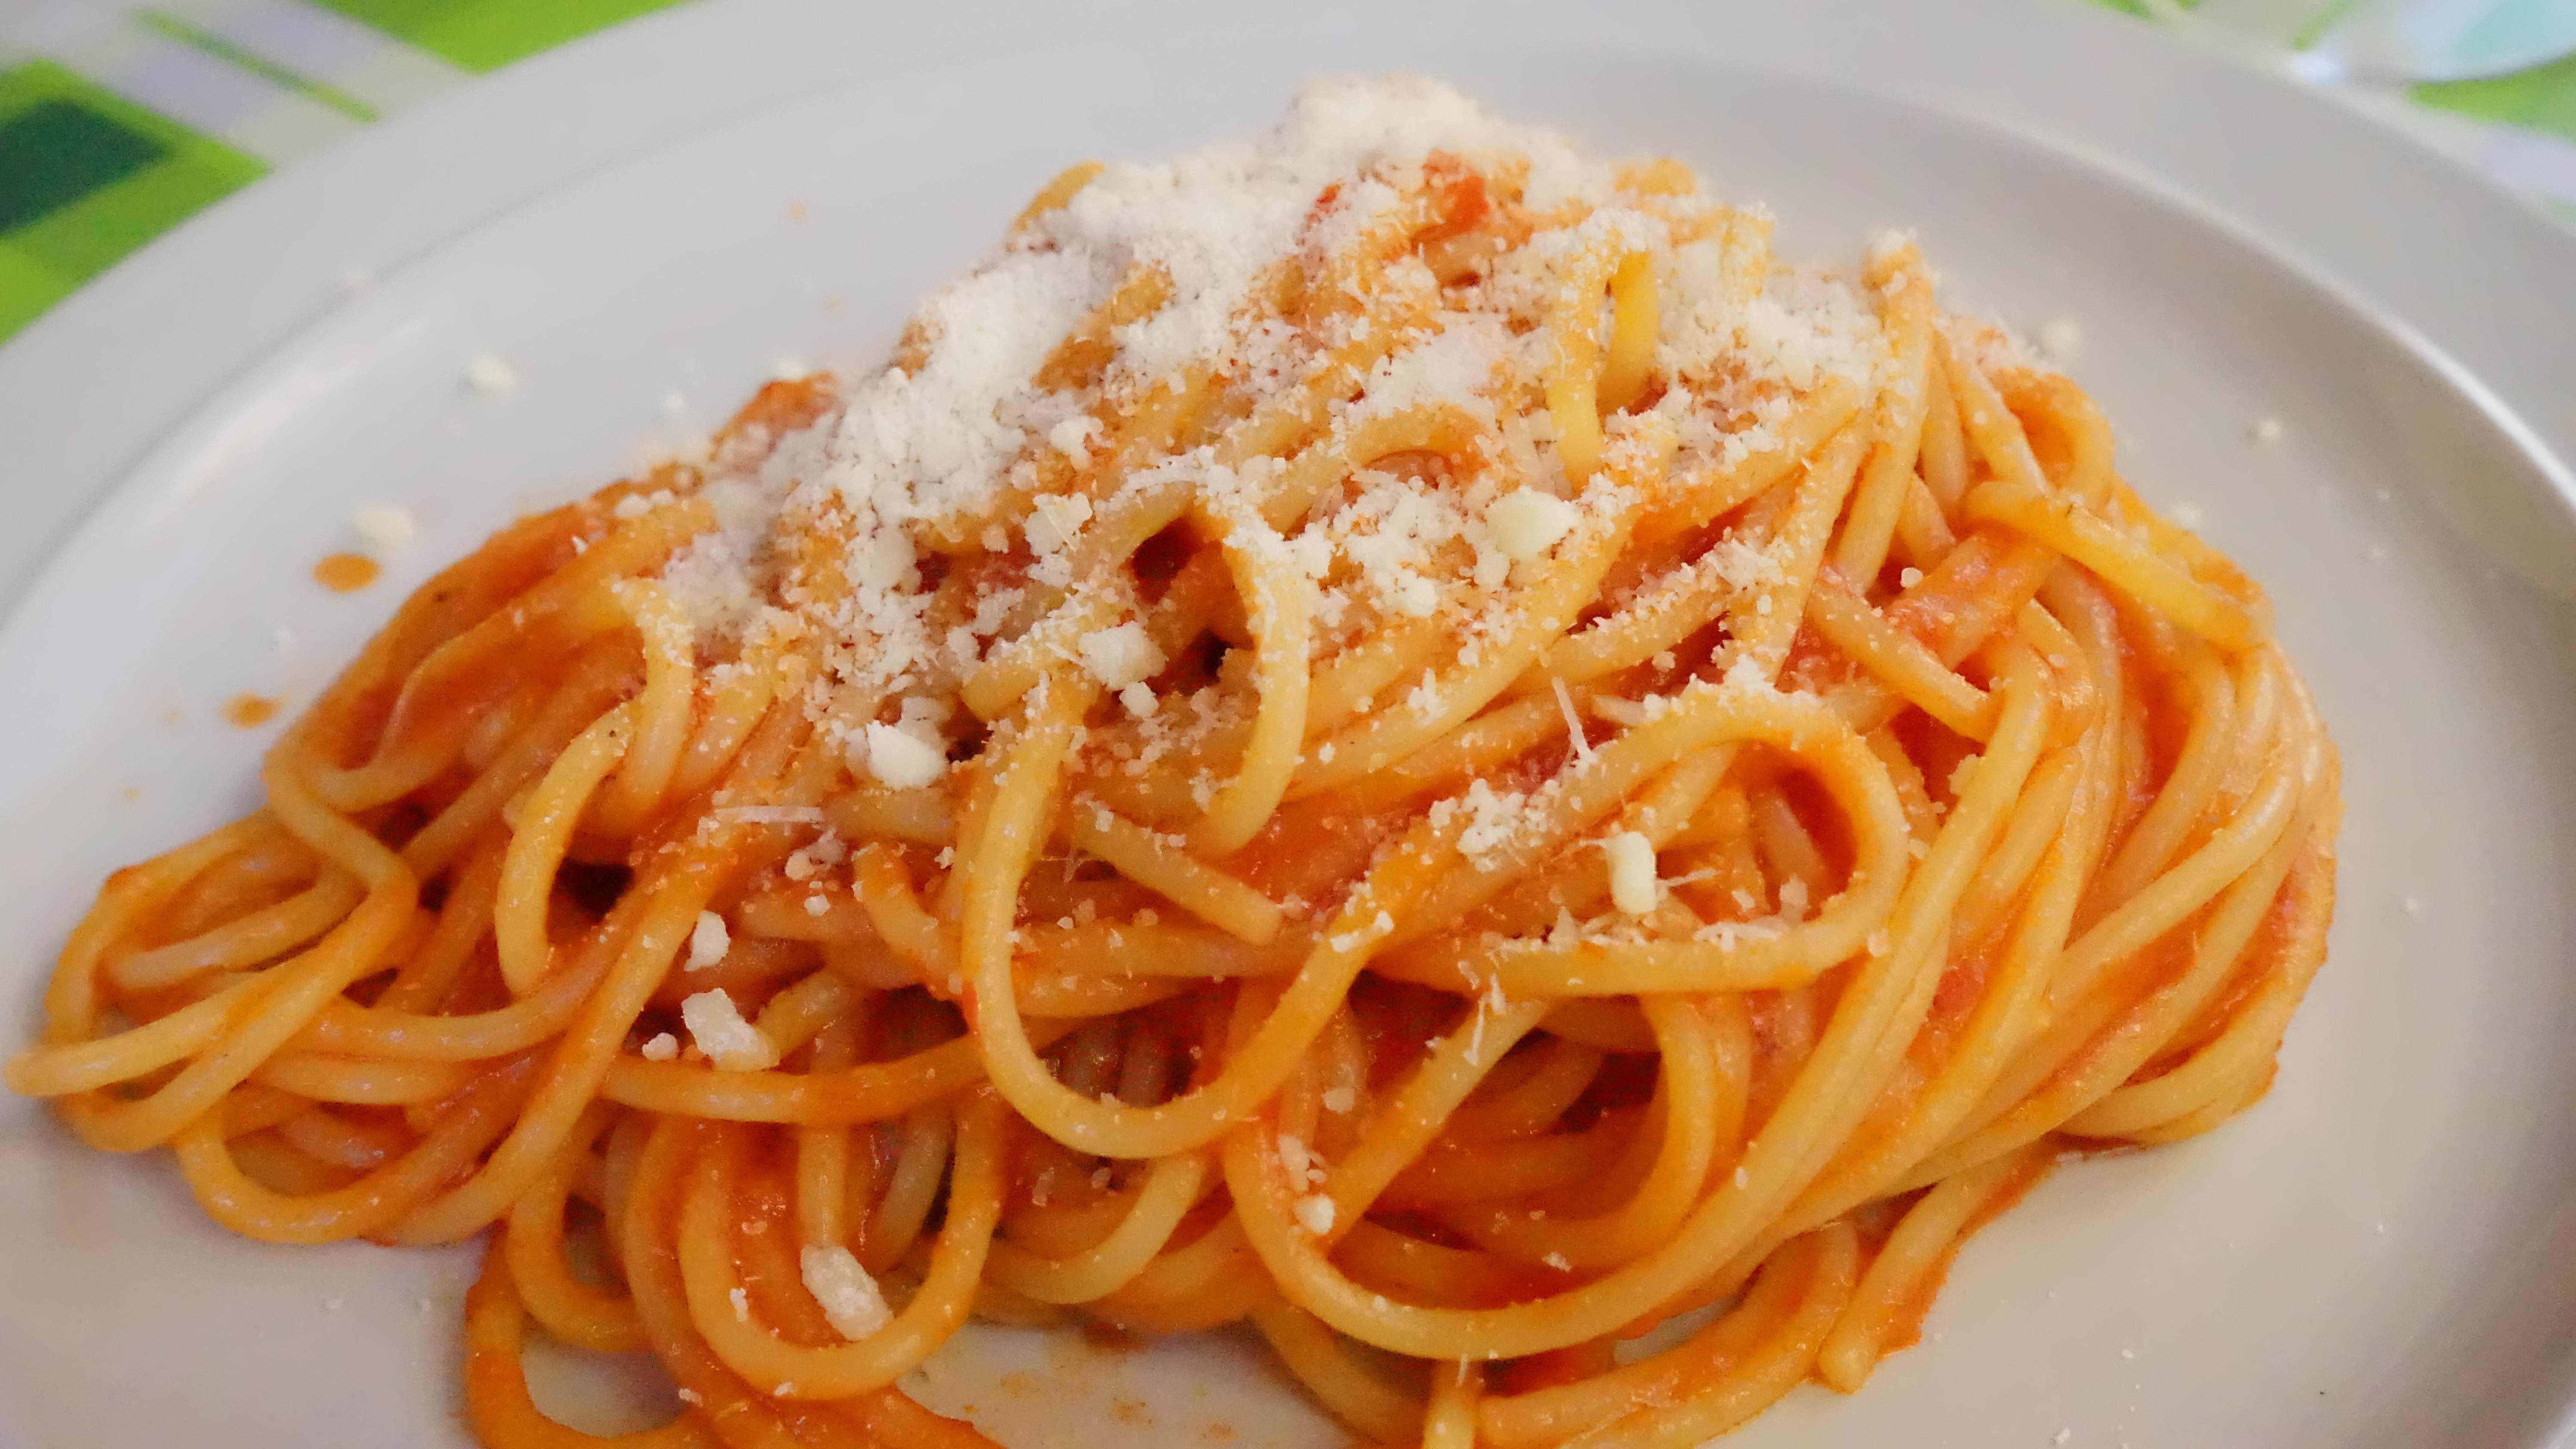 シンプルなトマトパスタパルメザンチーズ添え（パルミジャーノ・レッジャーノ）Pasta with tomato sauce